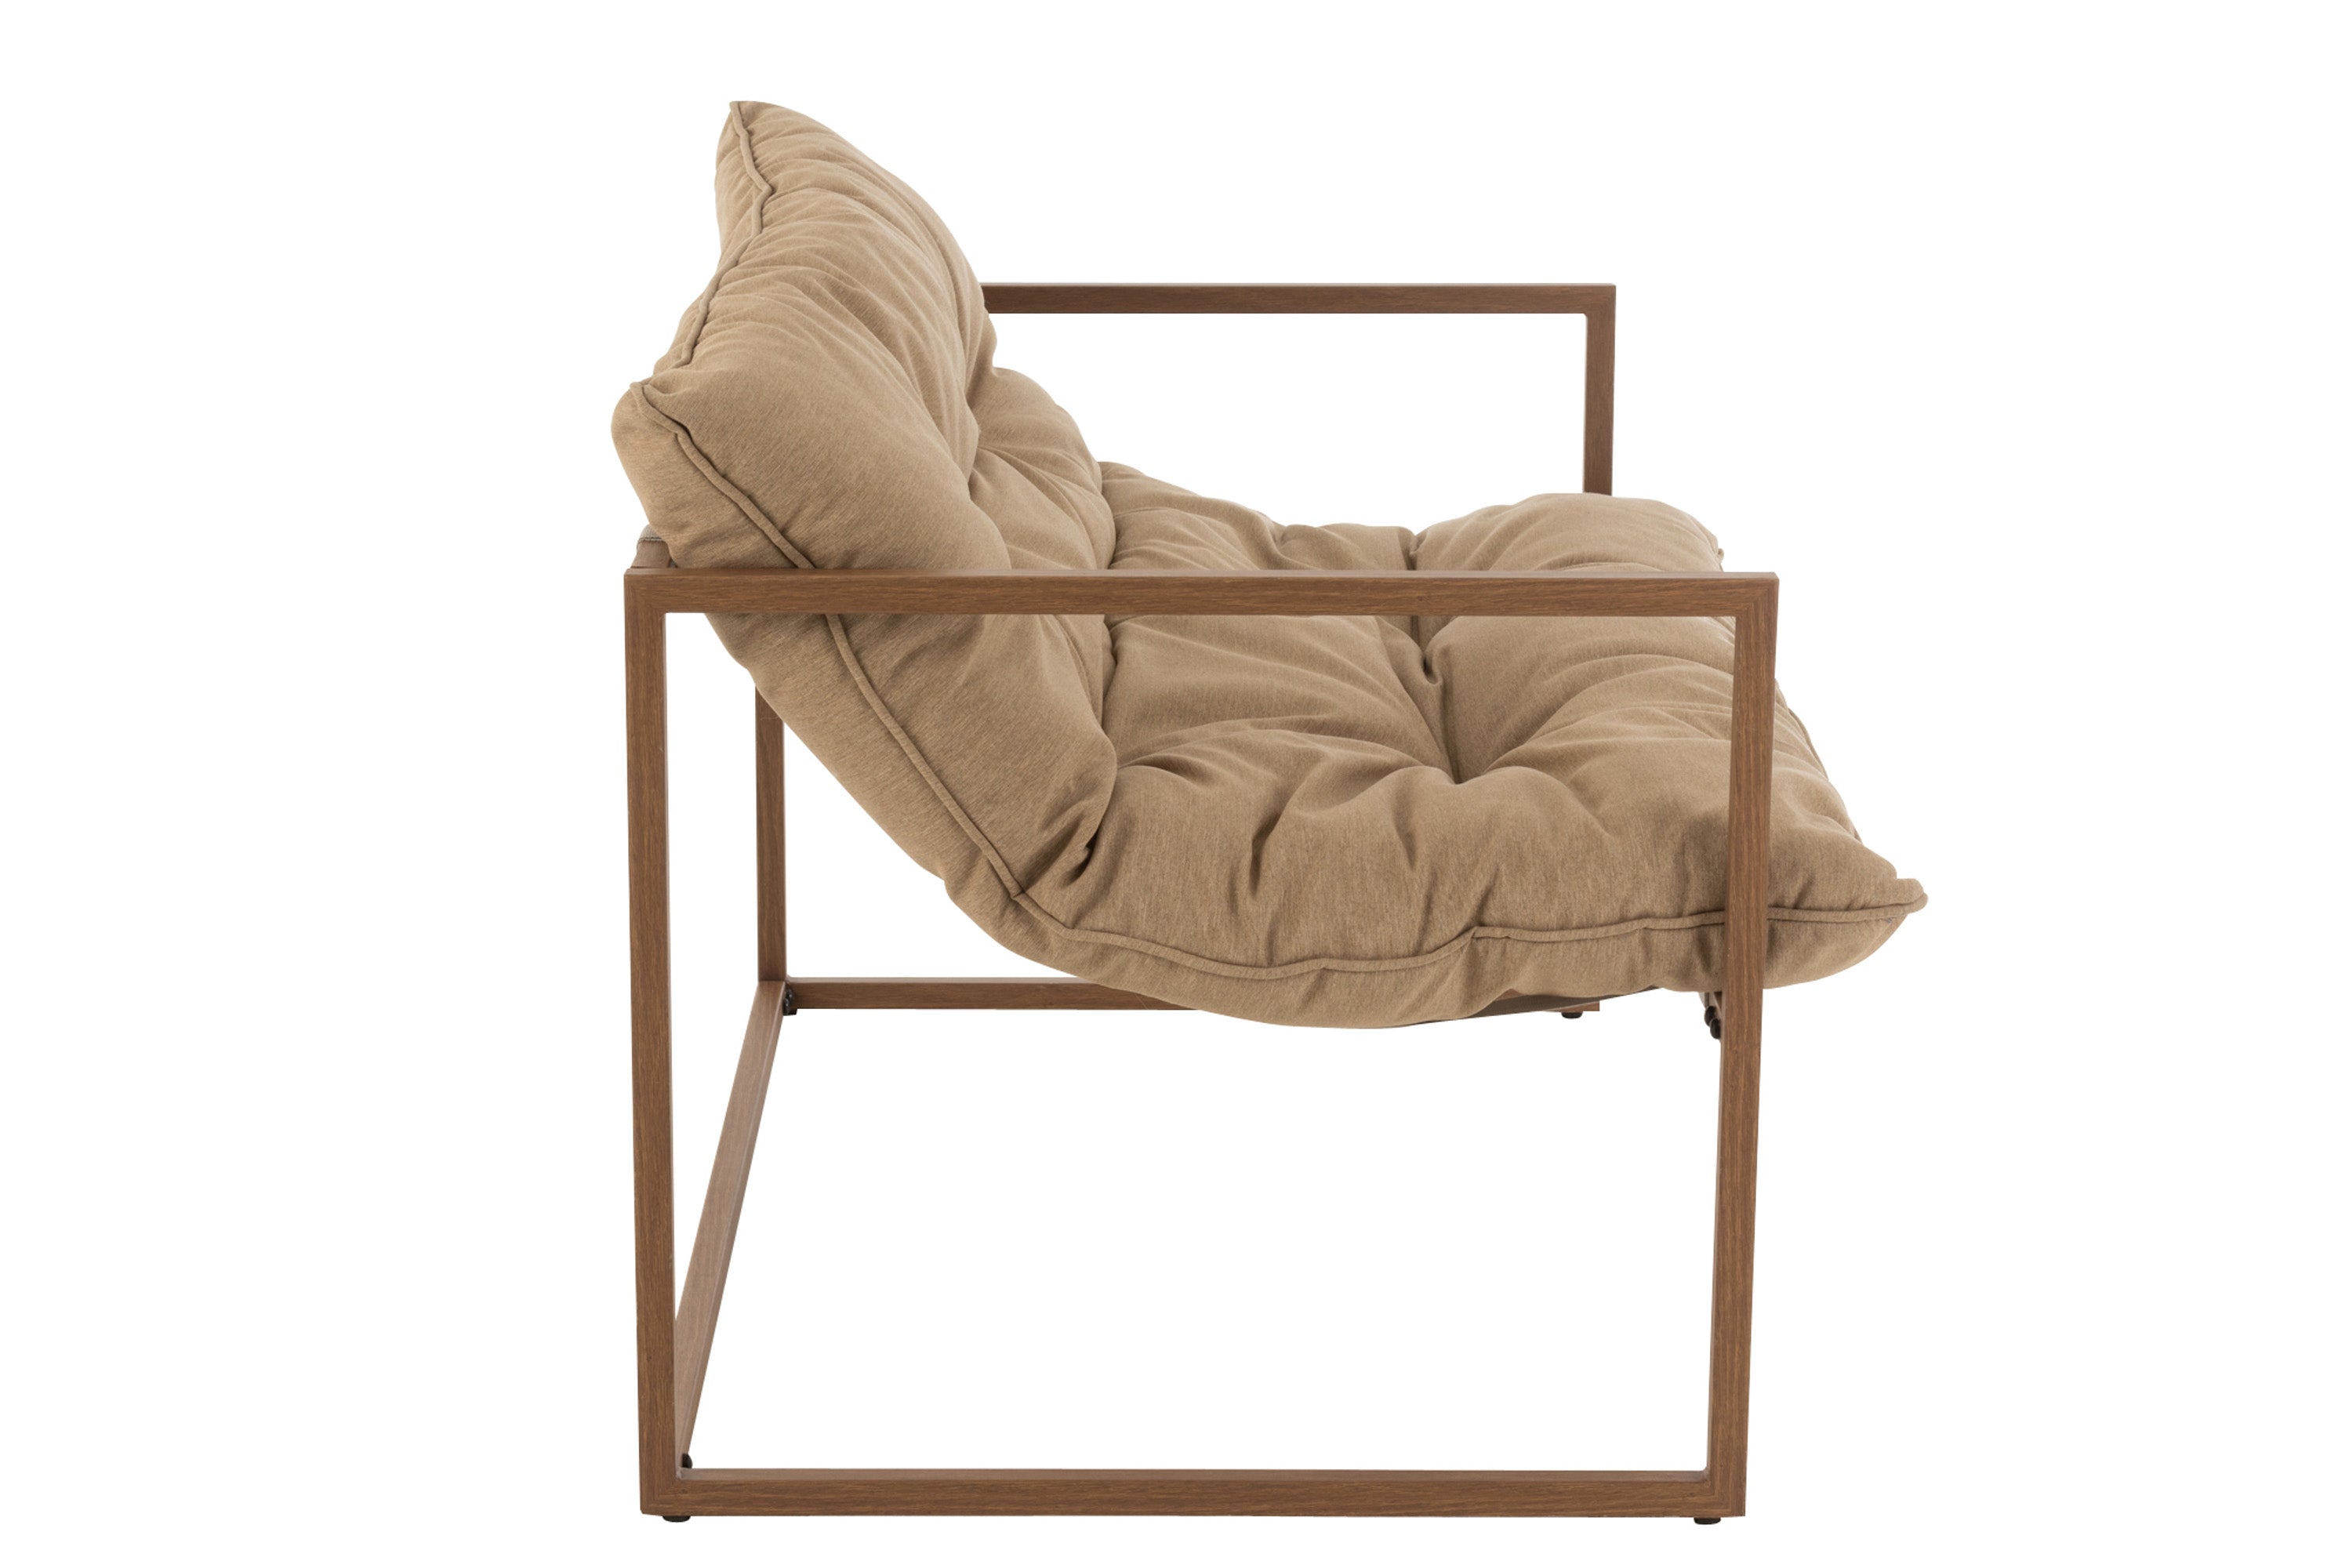 Sehr schickes Sofa für 2 Personen, Material: Eisen, Polyester, Baumwolle, beige/dunkelbraun